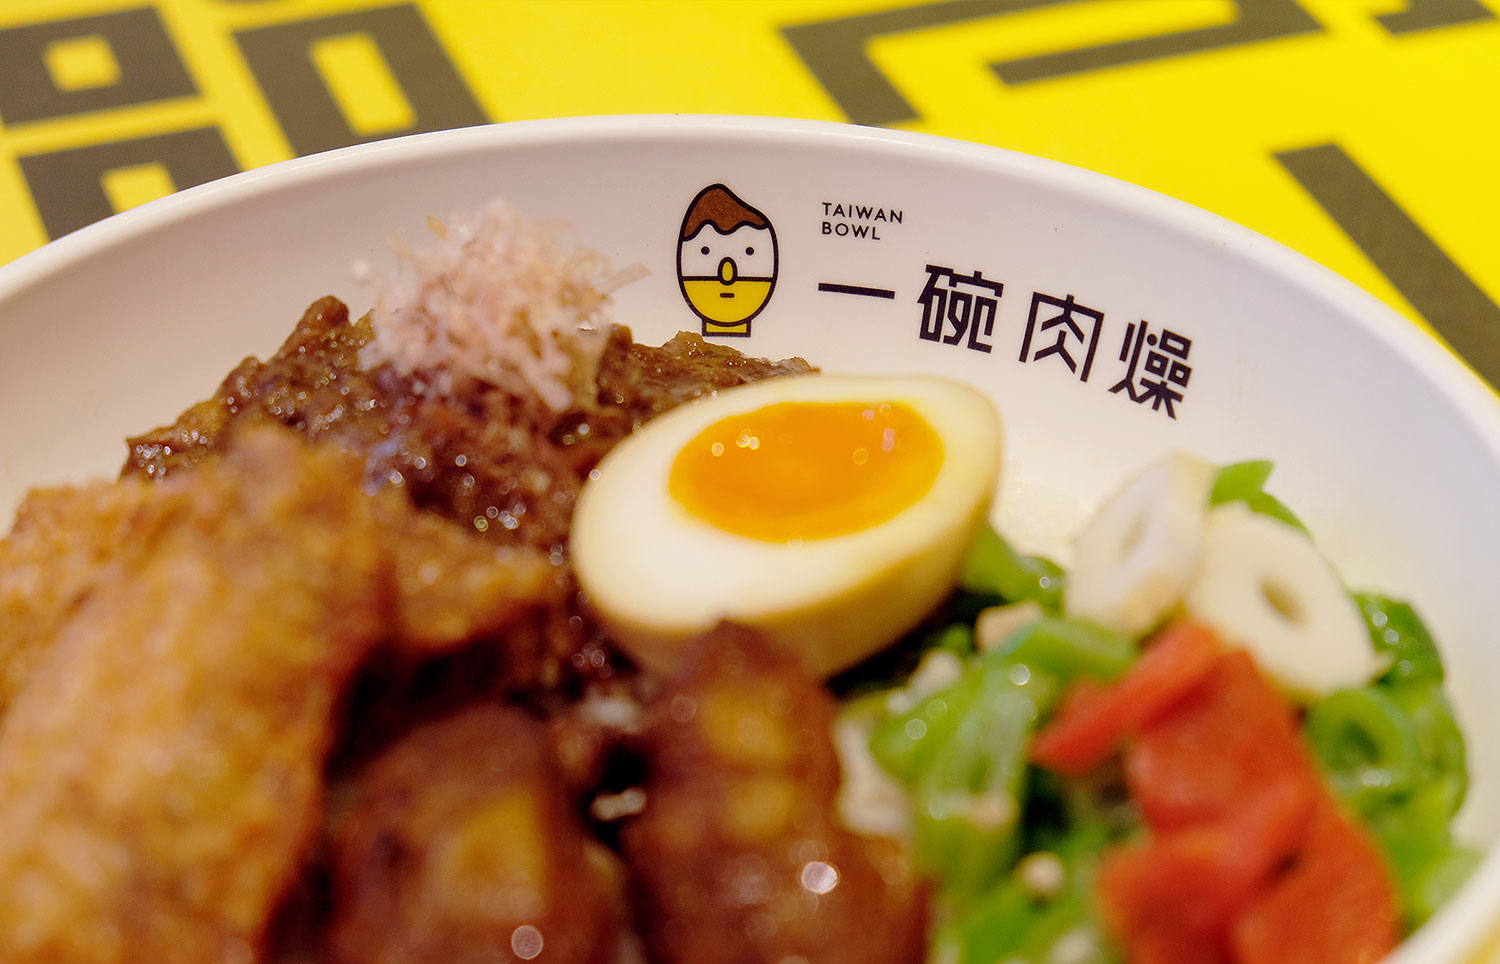 Taiwan Bowl一碗肉燥 台式肉燥/小吃/奶茶品牌设计